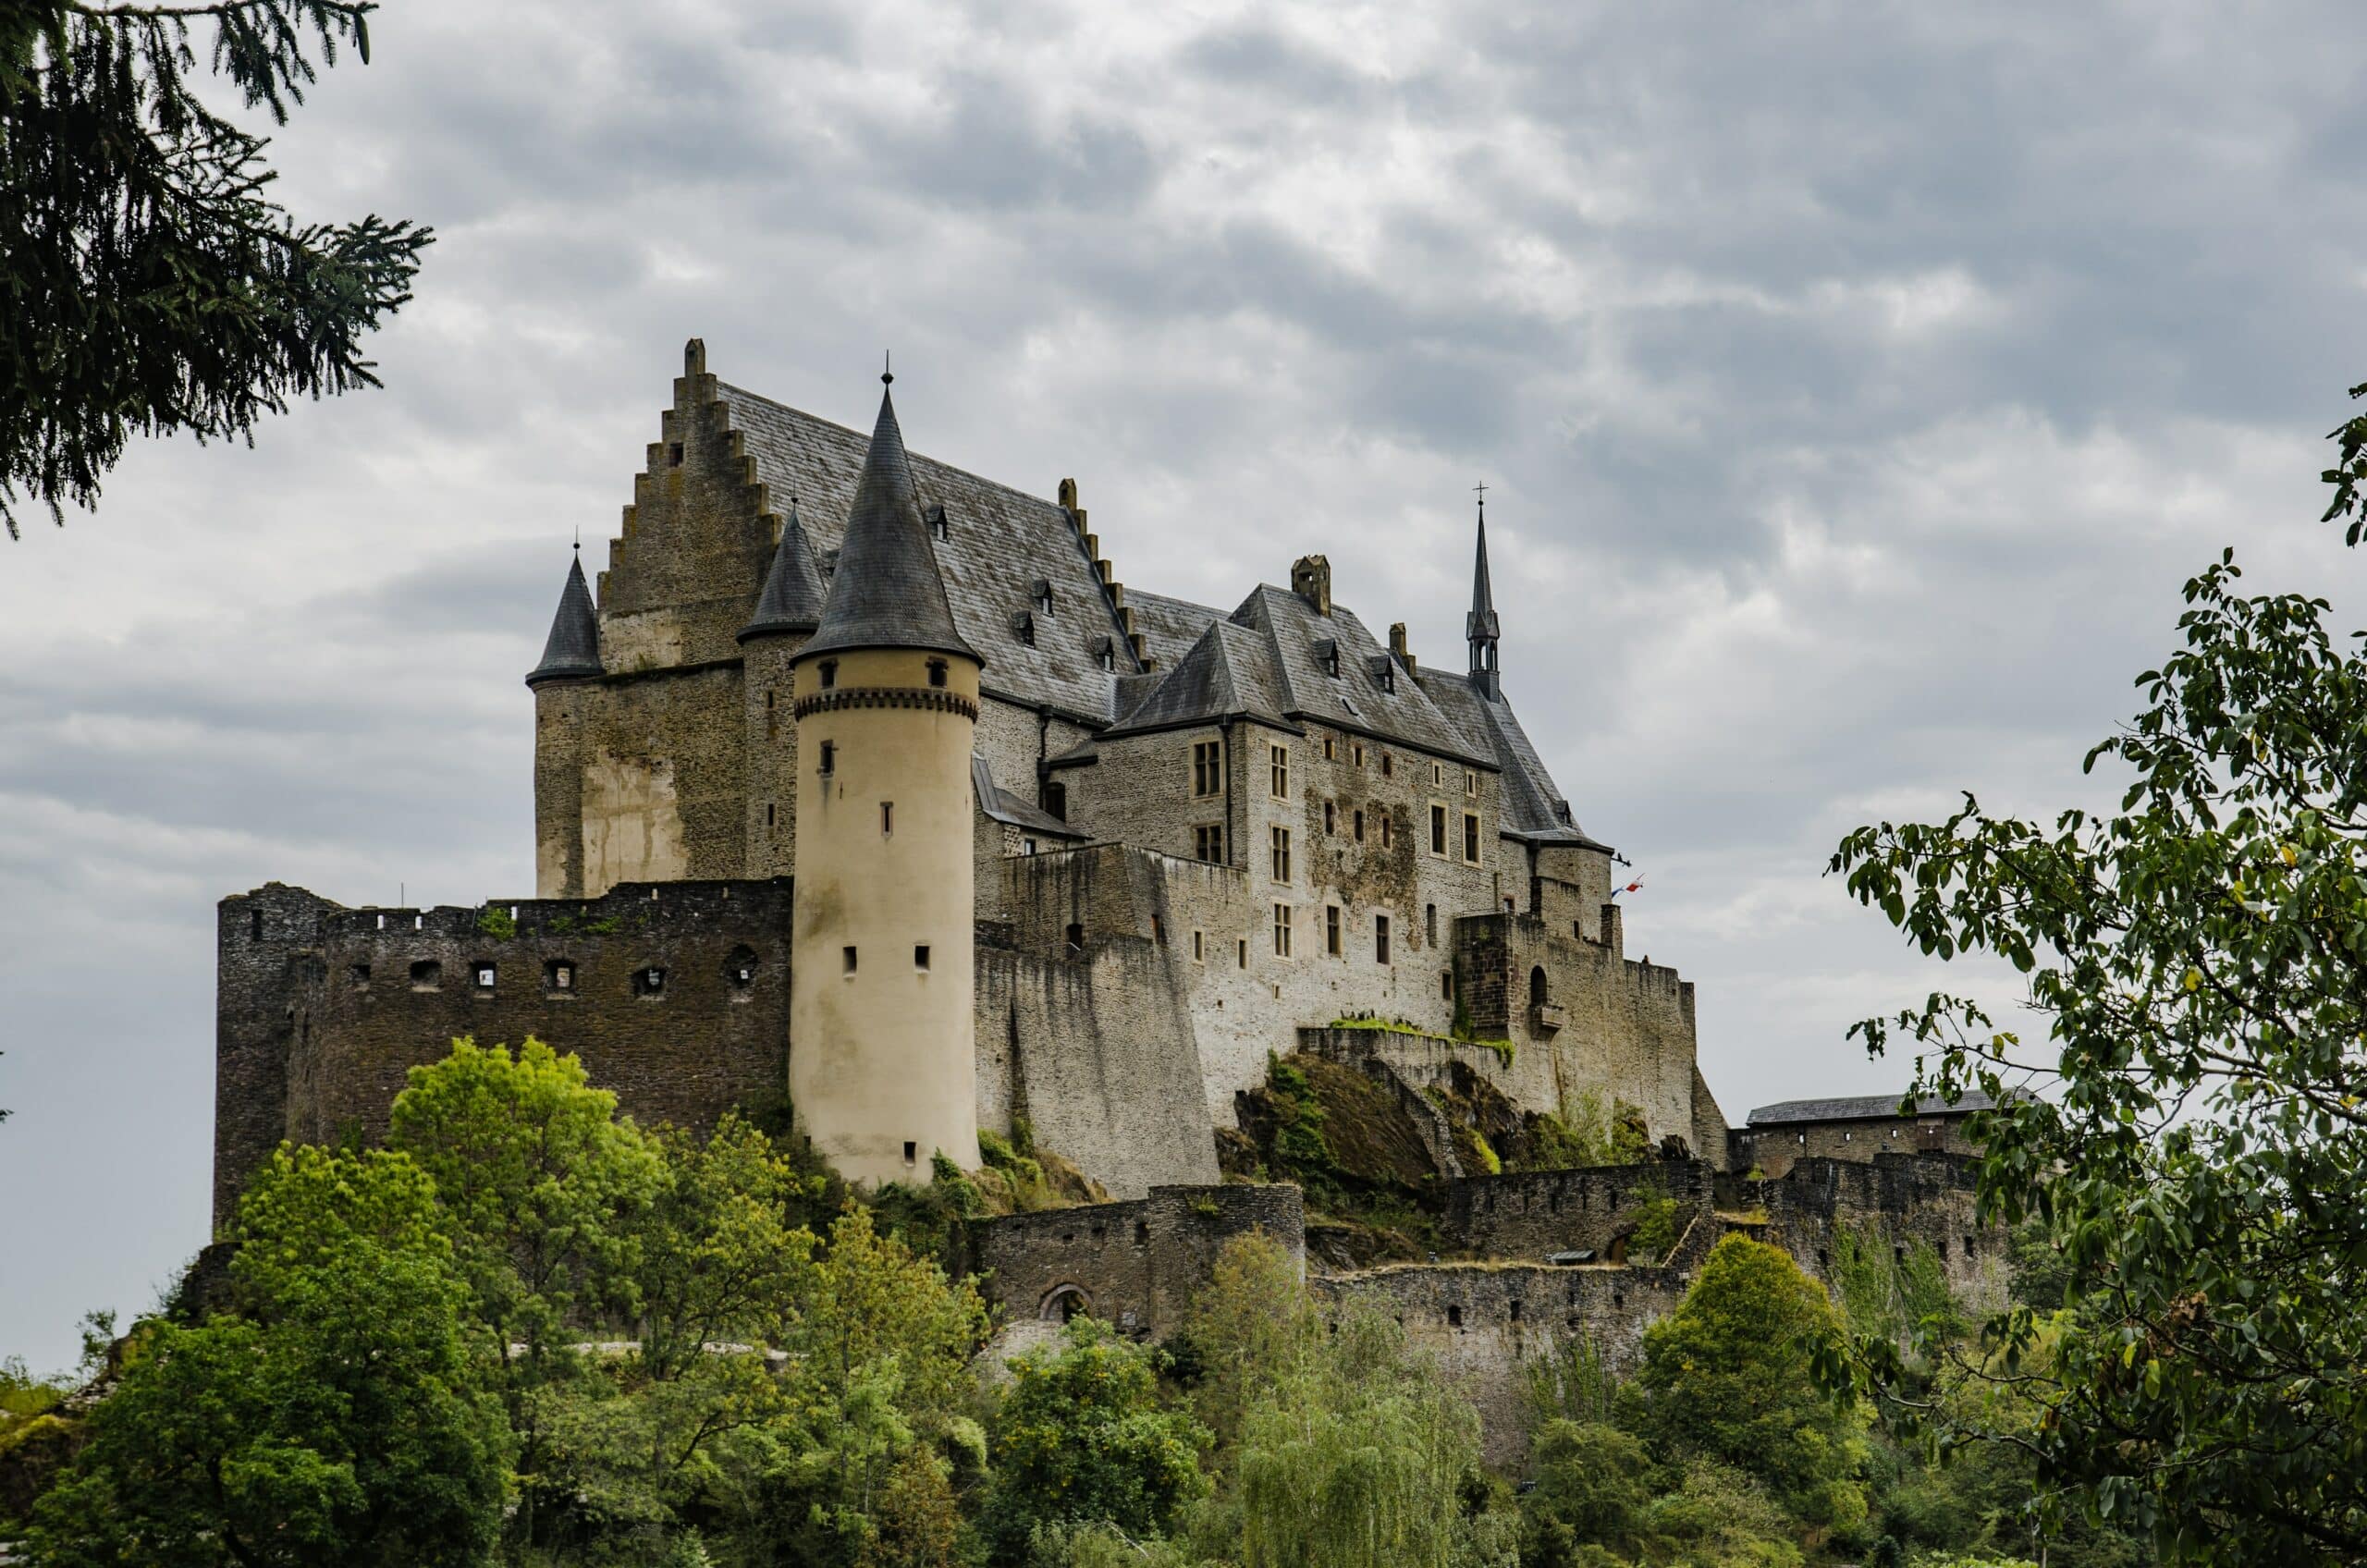 Vista do Castelo de Vianden, Luxemburgo que foi construído em estilo românico dos séculos XI a XIV cem volta de árvores.